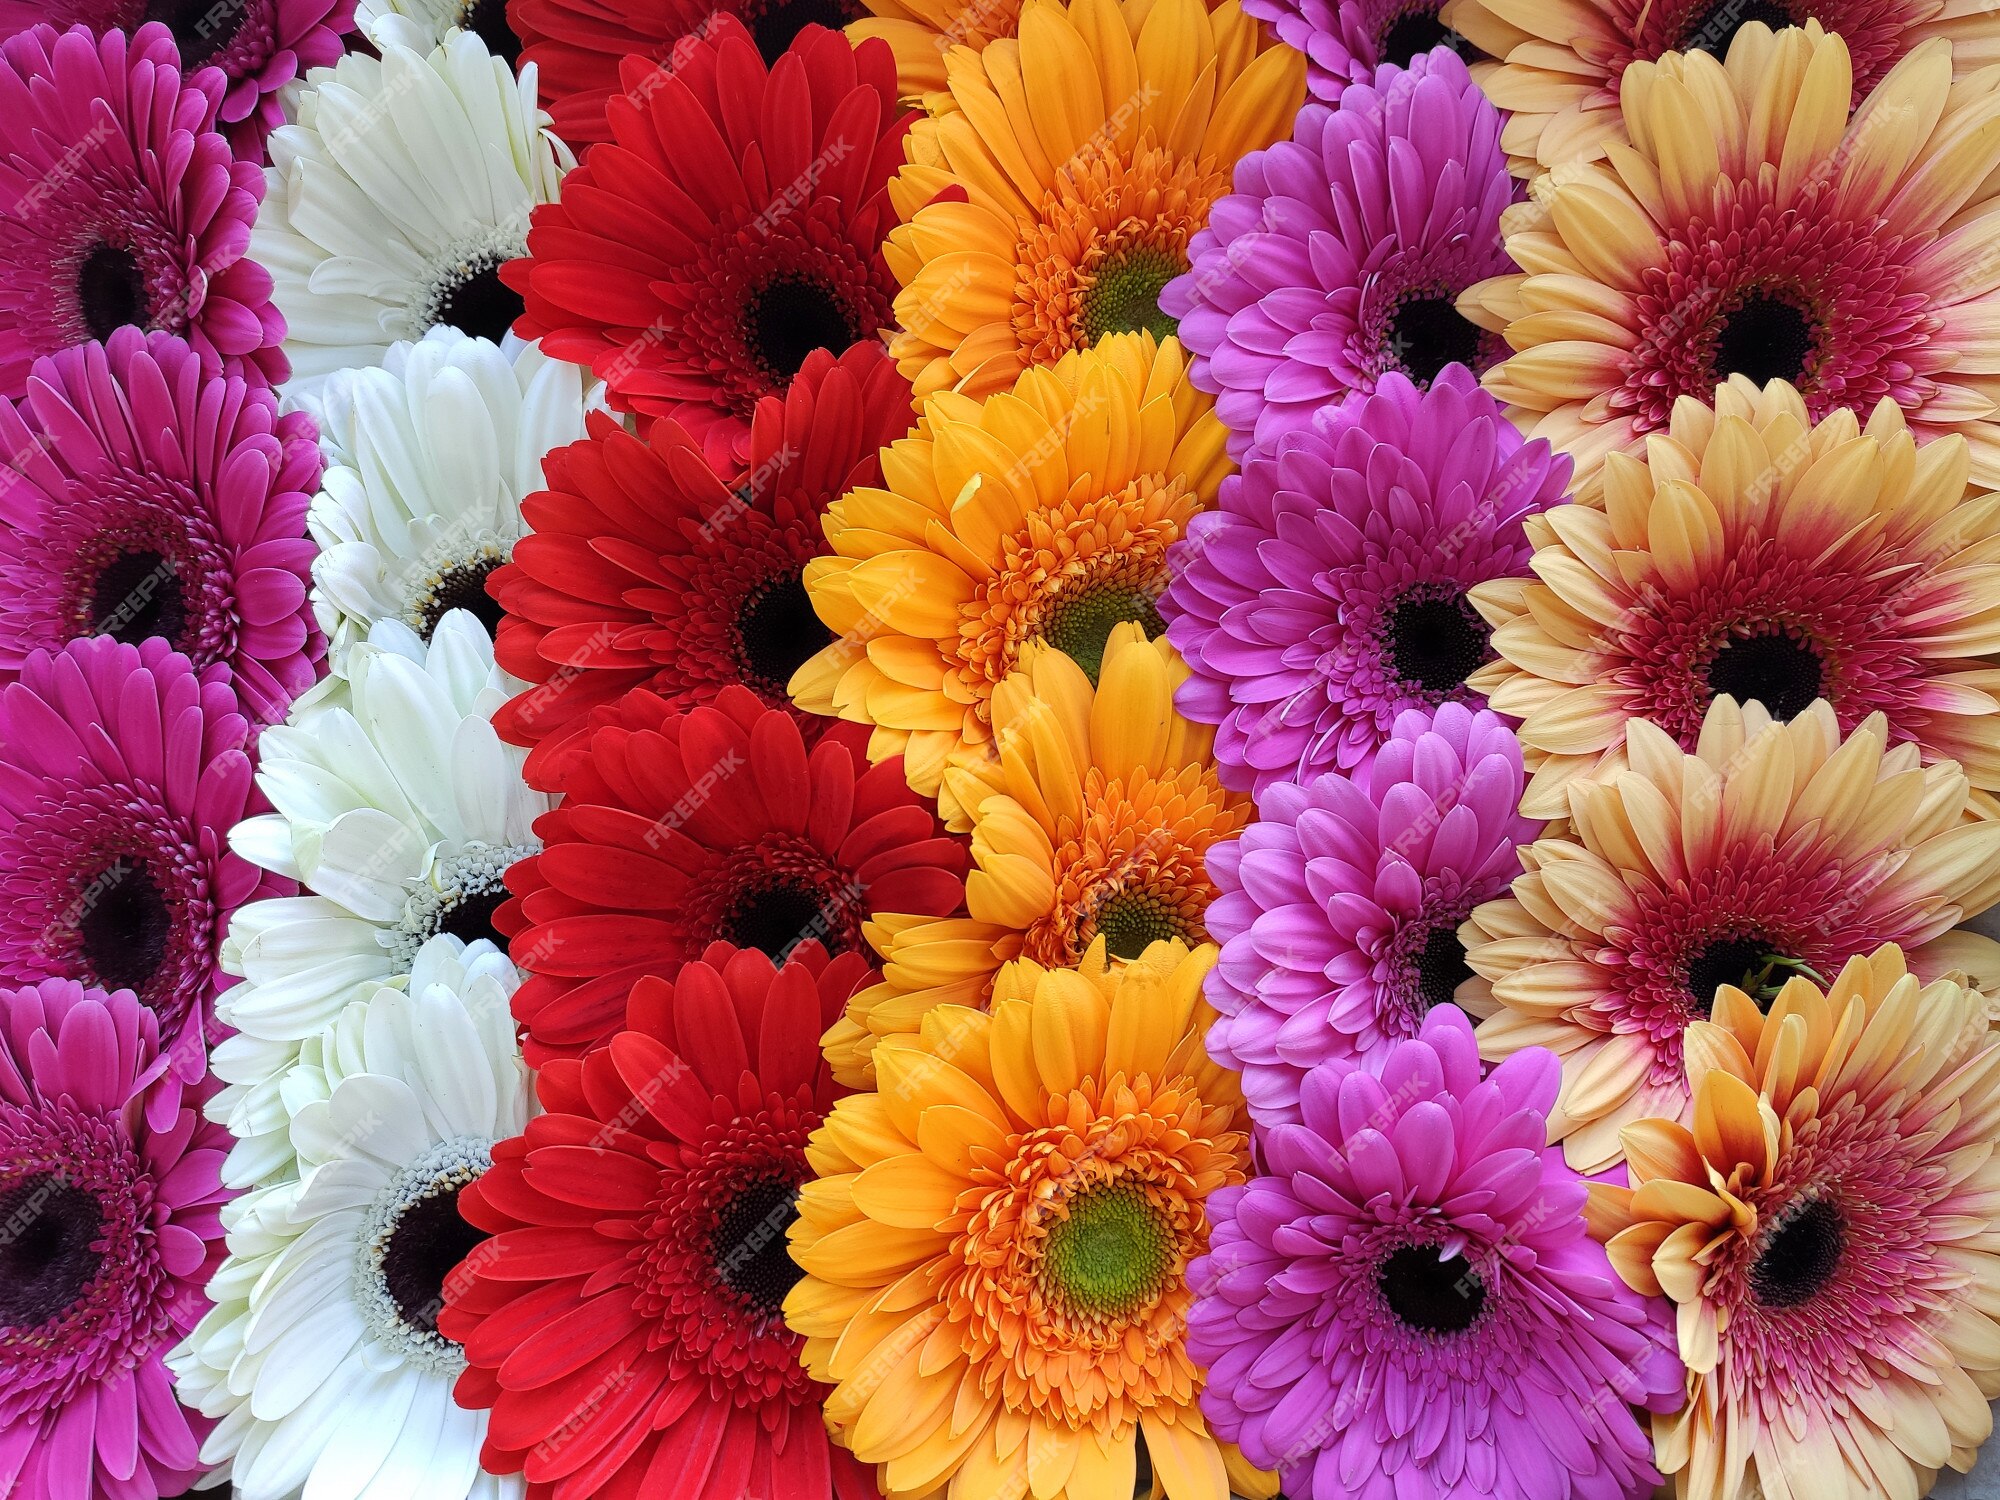 Flores de colores Images | Free Vectors, Stock Photos & PSD